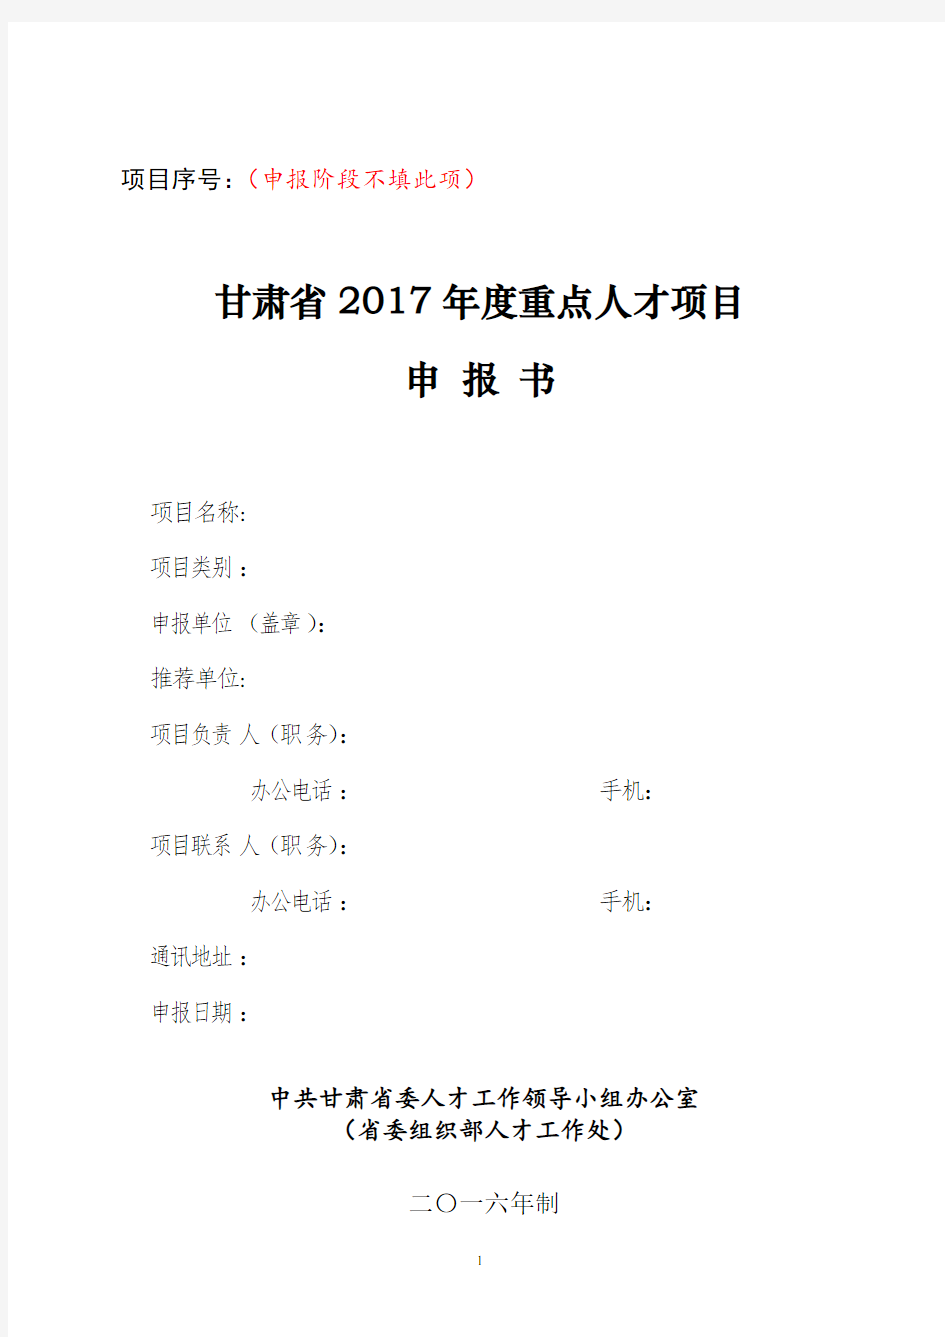 甘肃省2017年度重点人才项目申报书(2017年模版)